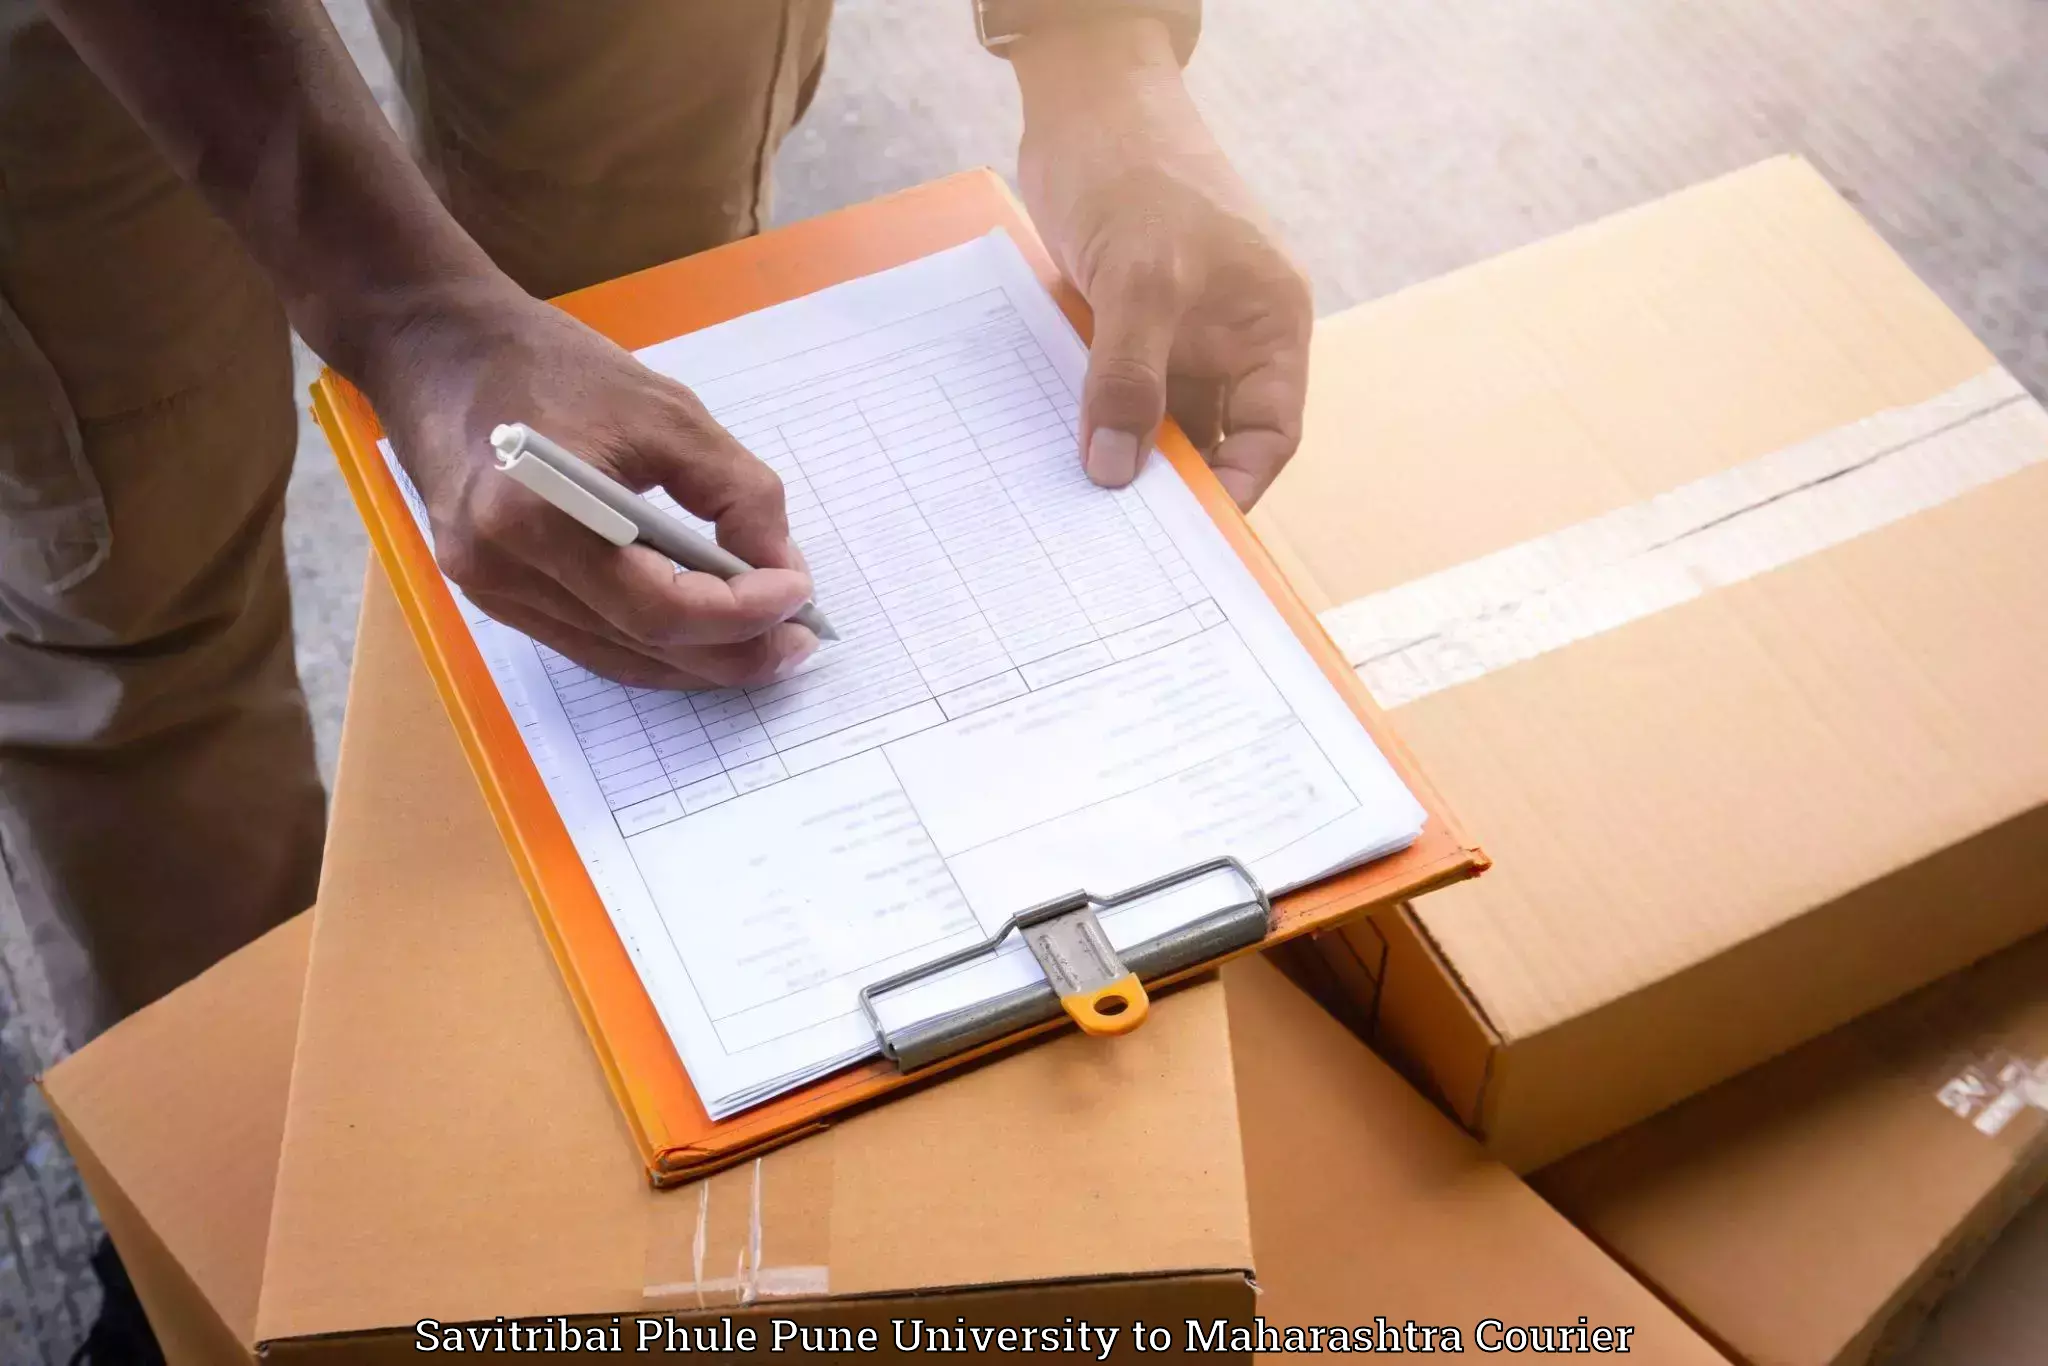 Moving and packing experts Savitribai Phule Pune University to Ichalkaranji